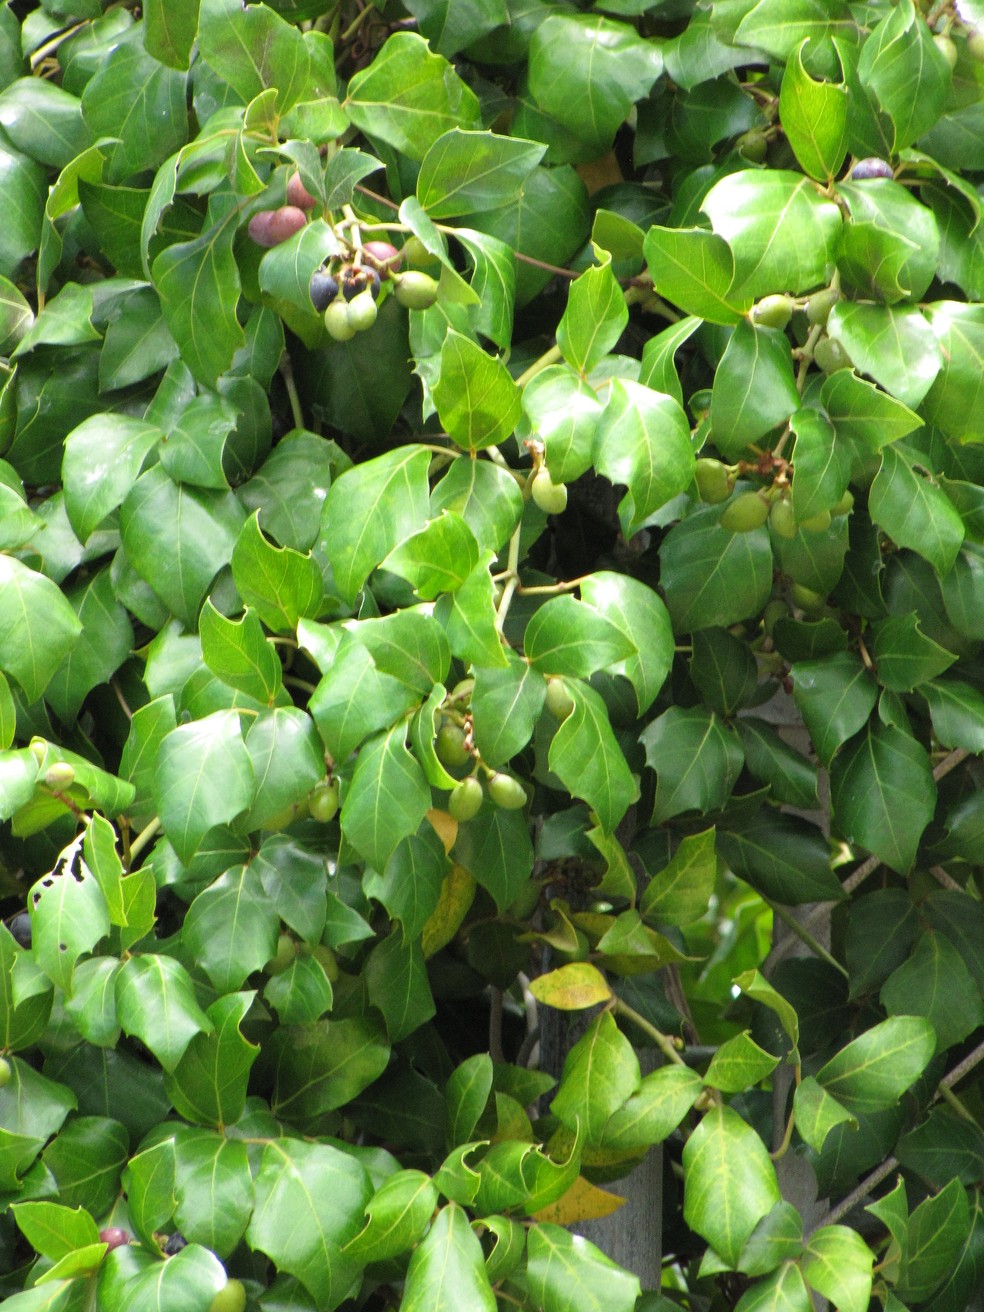 O cipó-uva cresce em ambientes semi-sombreados e em substrato rico em matéria orgânica — Foto: Flickr / Forest and Kim Starr / CreativeCommons